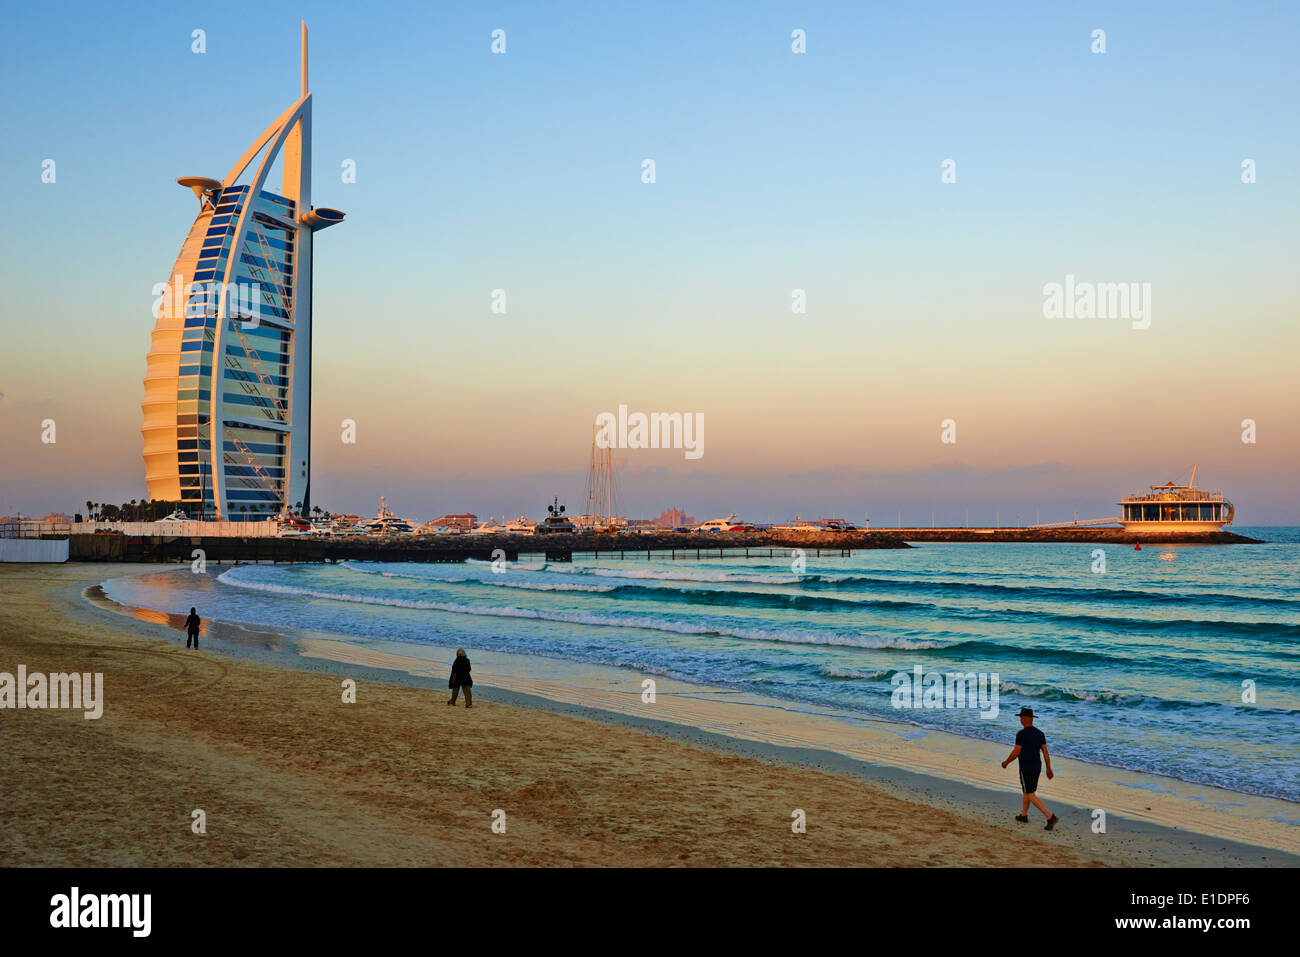 Emirats Arabes Unis, Dubaï, Jumeirah Beach, l'hôtel Burj Al Arab Banque D'Images